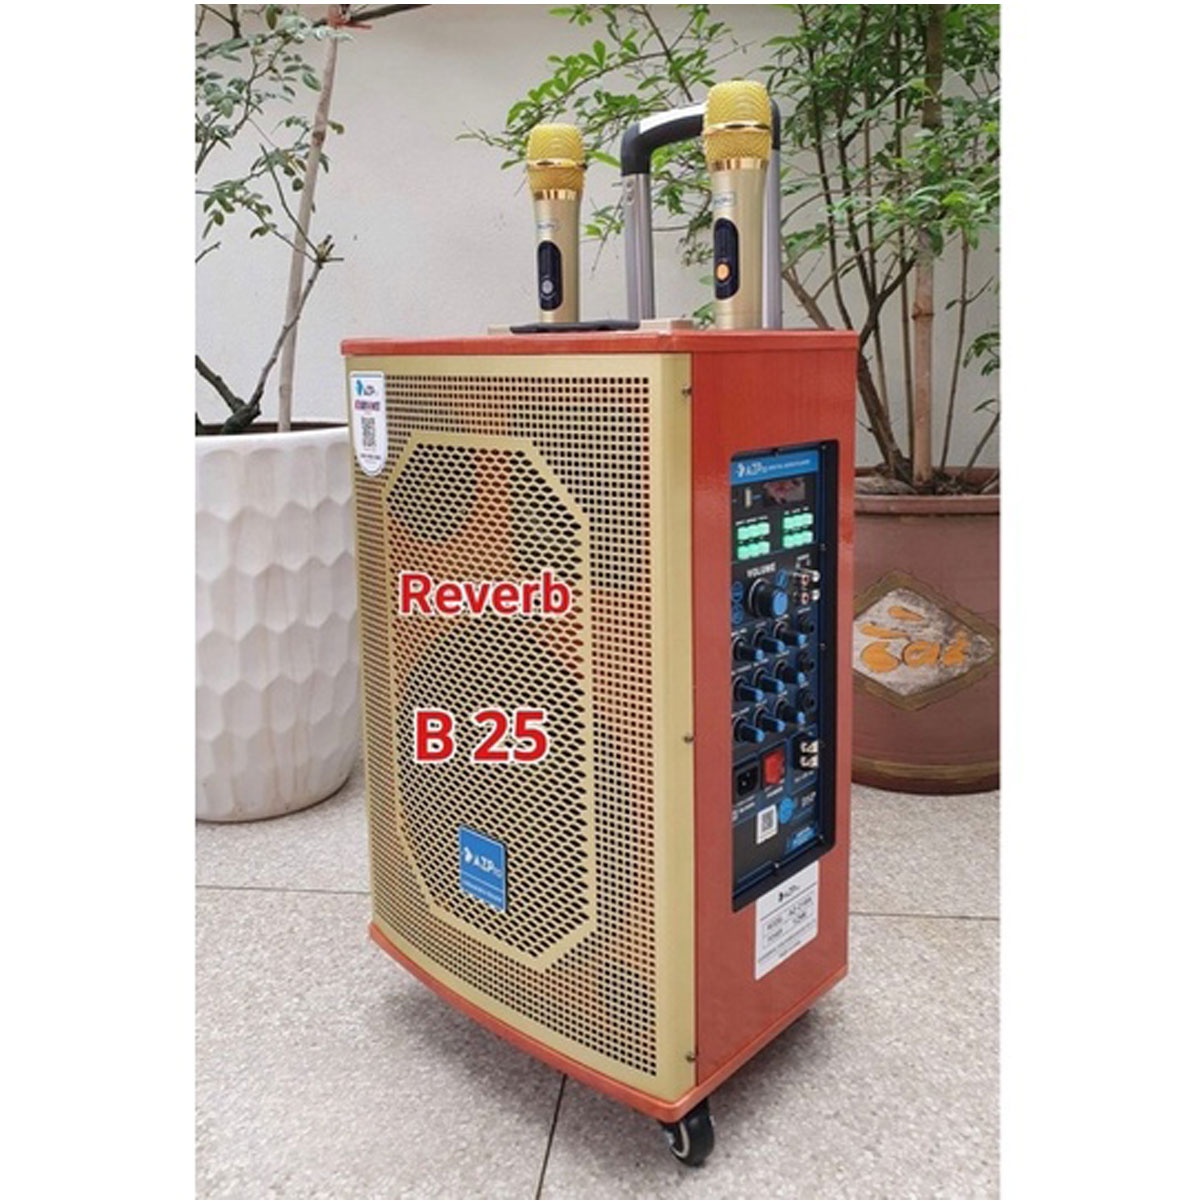 Loa Kéo Karaoke Công Suất Lớn 700W| Loa Kéo Giá Rẻ Azpro AZ-218 Bas25 (3 ĐT)| Loa Kéo Bluetooth Usb Tặng 2 Micro Chống Hú Xịn | Loa Bluetooth Bass Mạnh